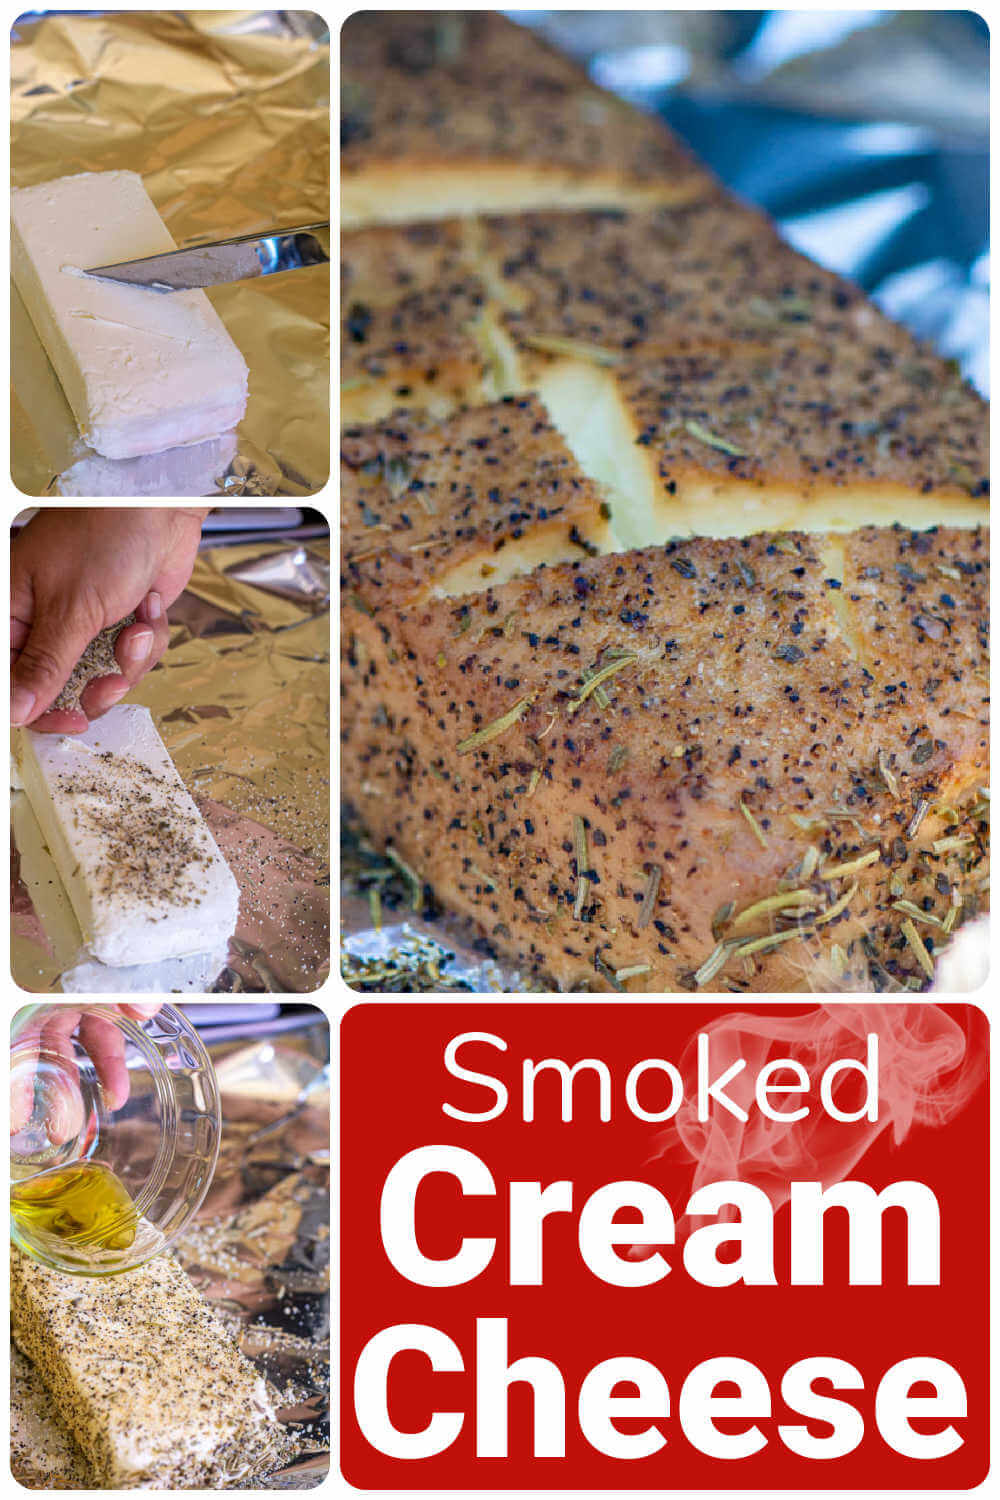 Smoked Cream Cheese Recipe